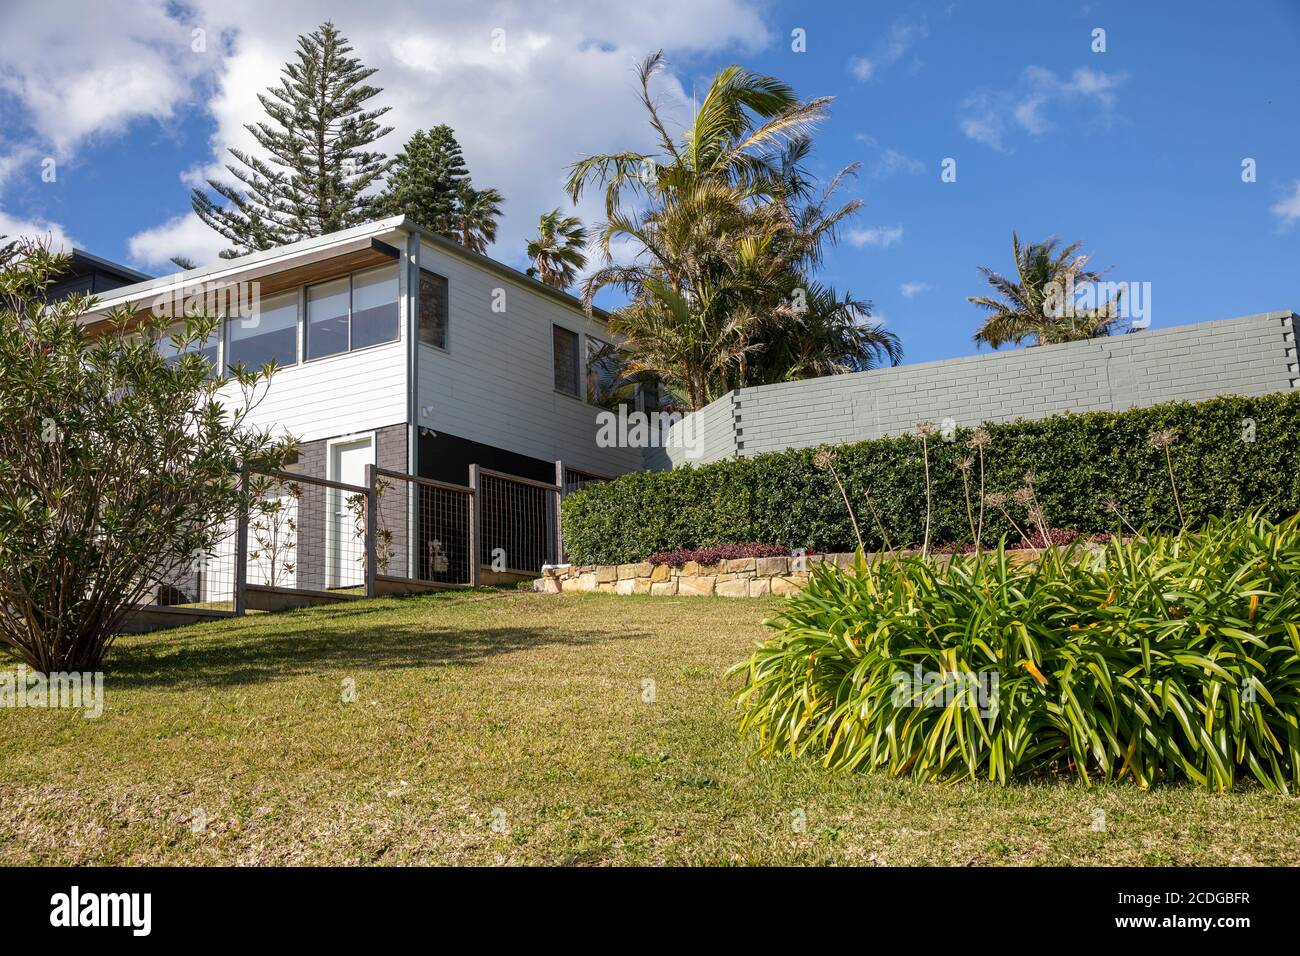 Maison indépendante australienne à Avalon avec jardin et plantes domestiques, Sydney, Australie Banque D'Images